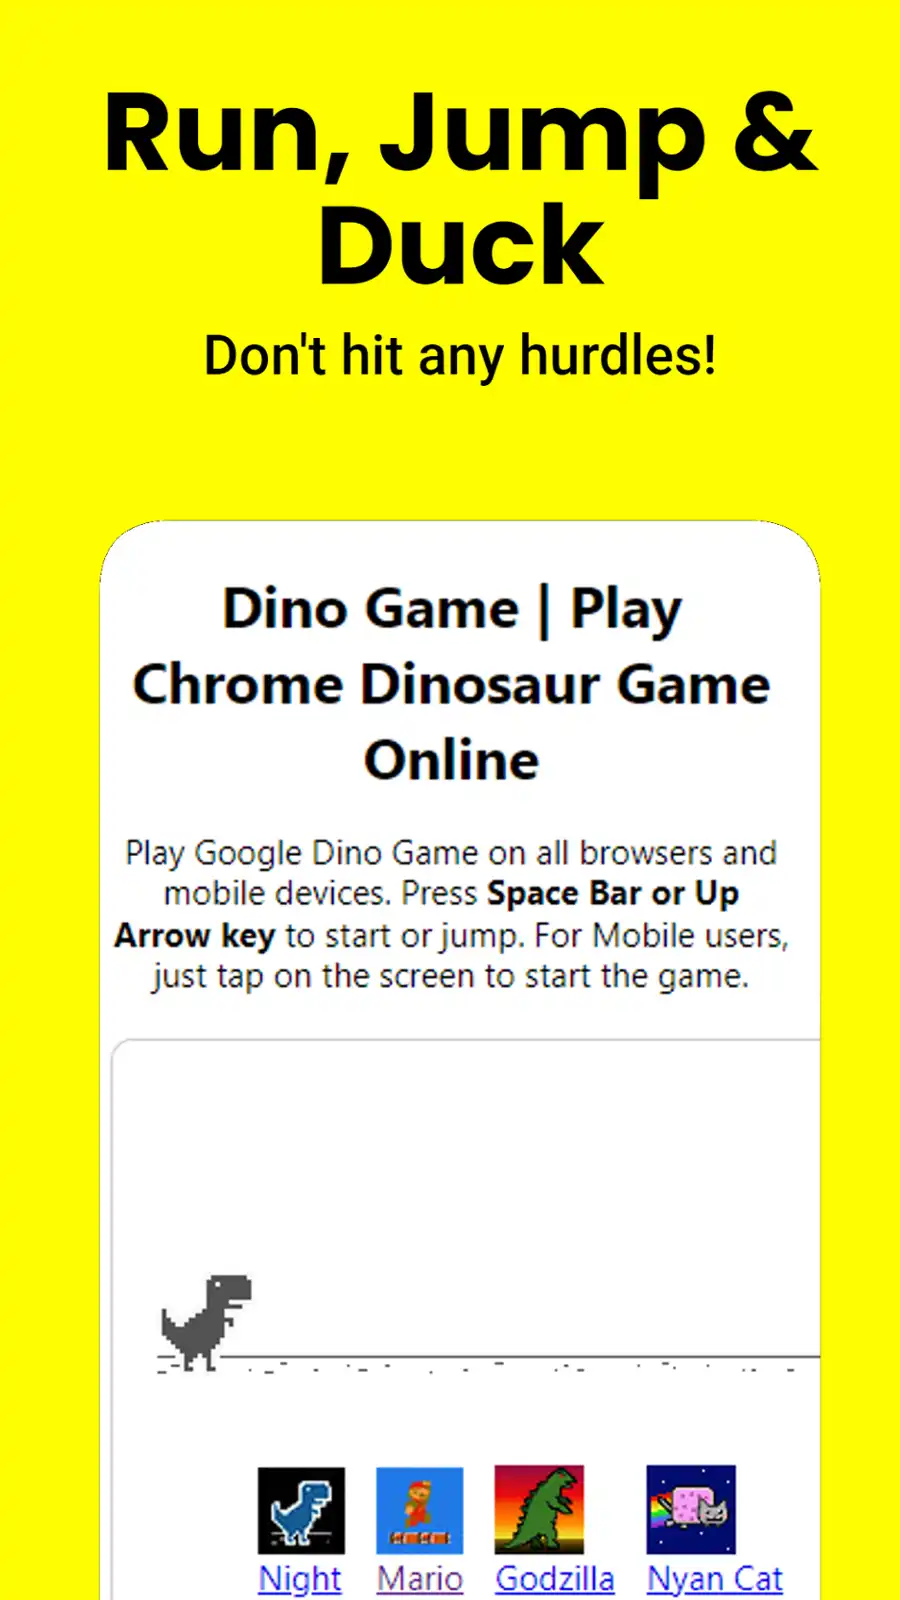 Muat turun alat web atau apl web Google Dino Game